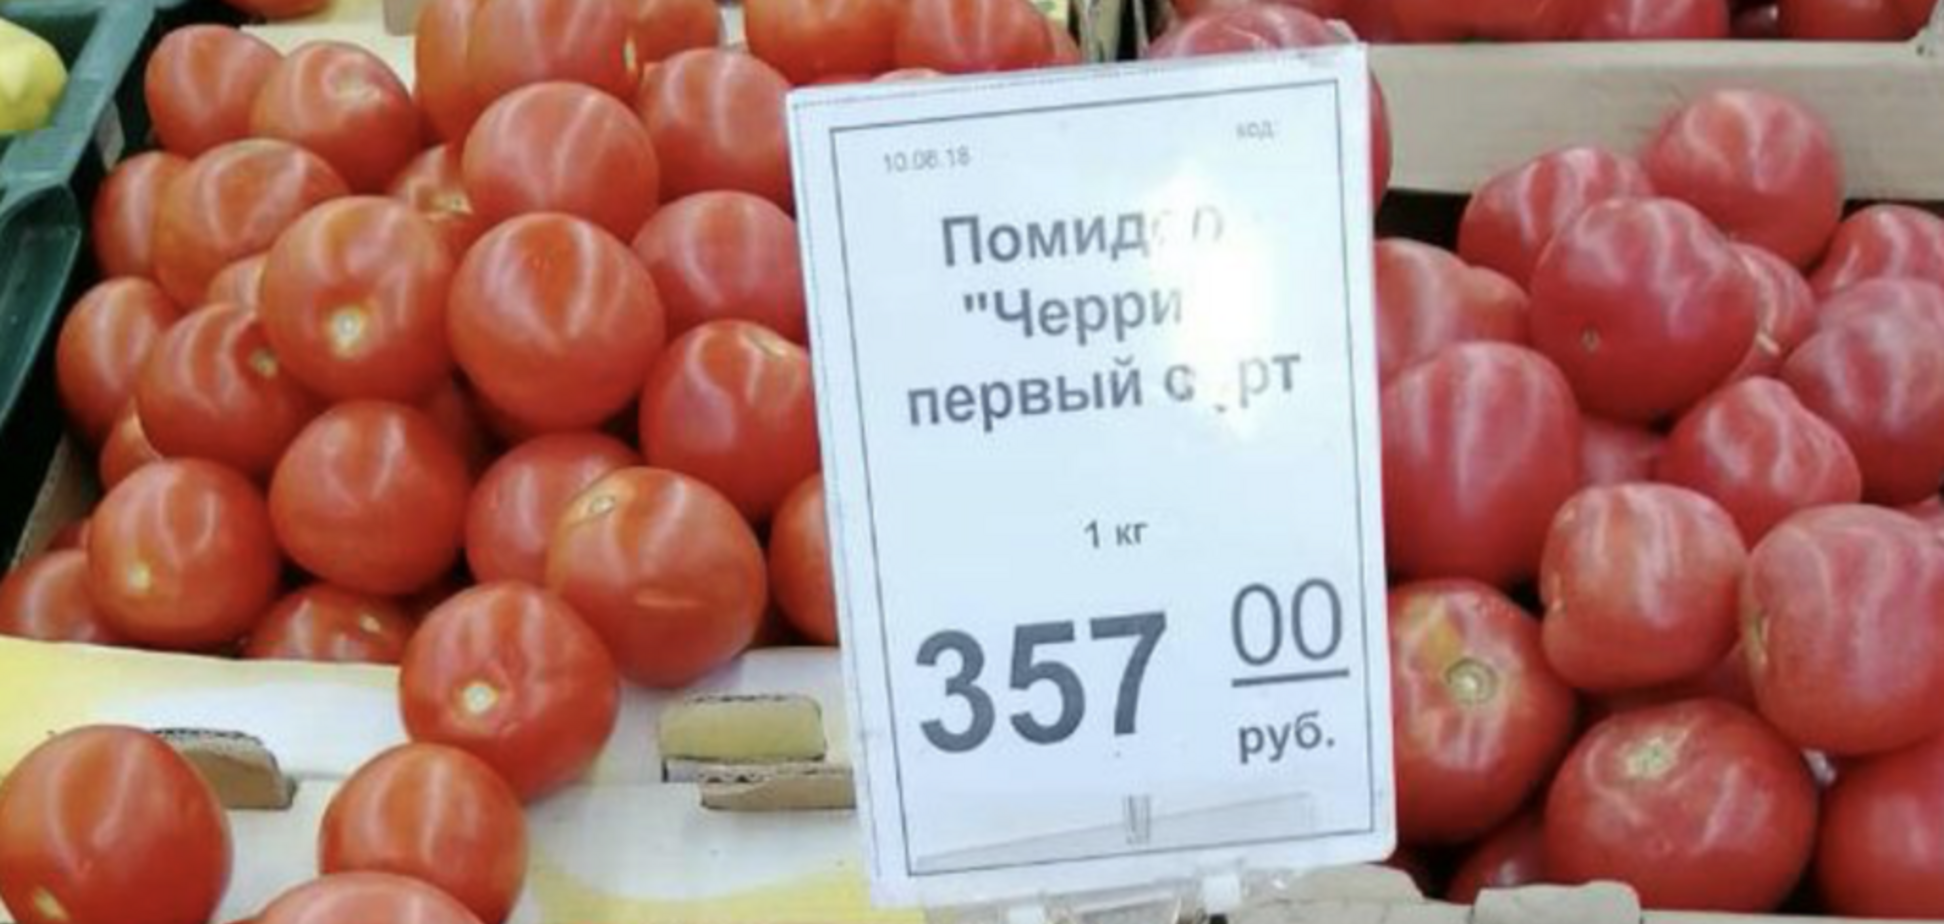 'Таких цен нет!' В Крыму всполошились из-за рекордно дорогих помидоров